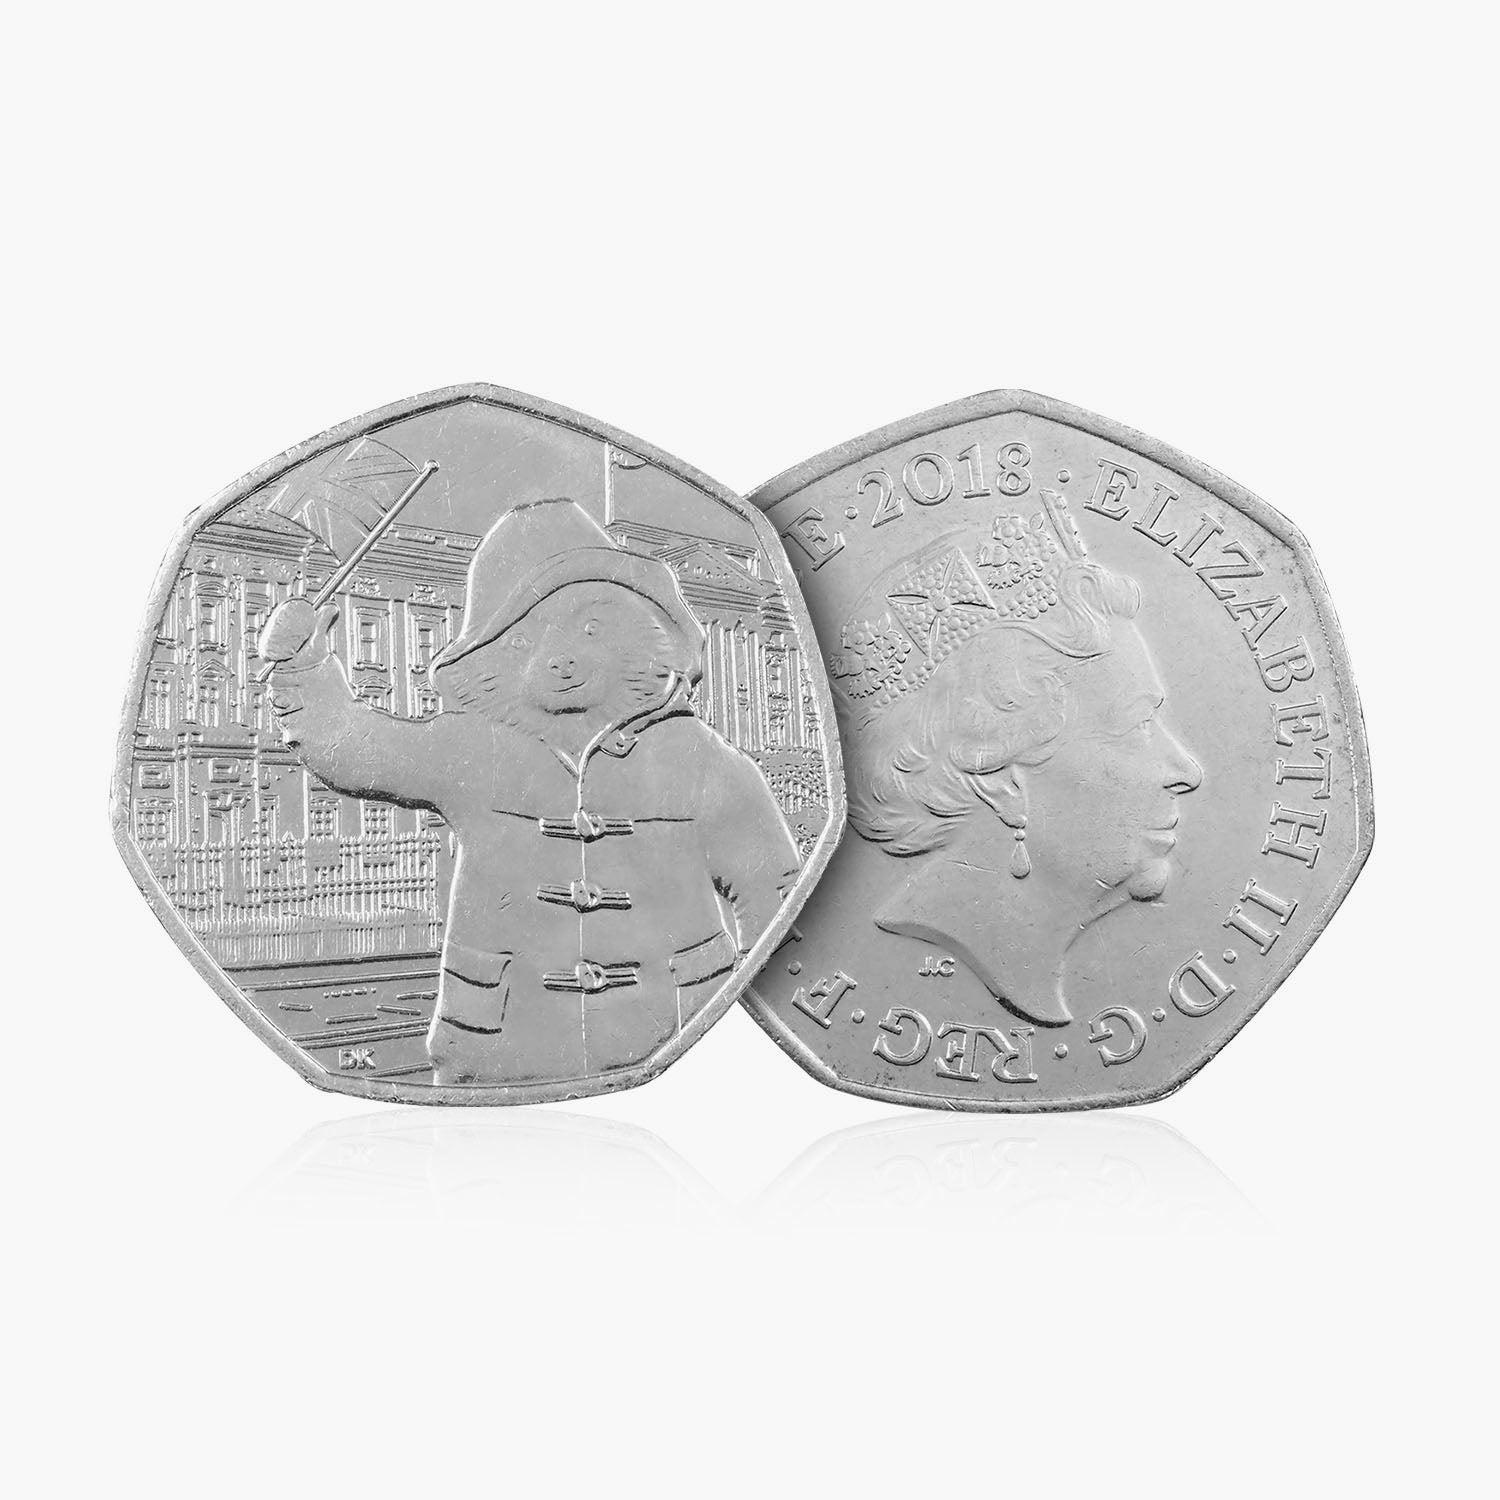 2018 Circulated Paddington Bear series - Paddington at Buckingham Palace 50p coin